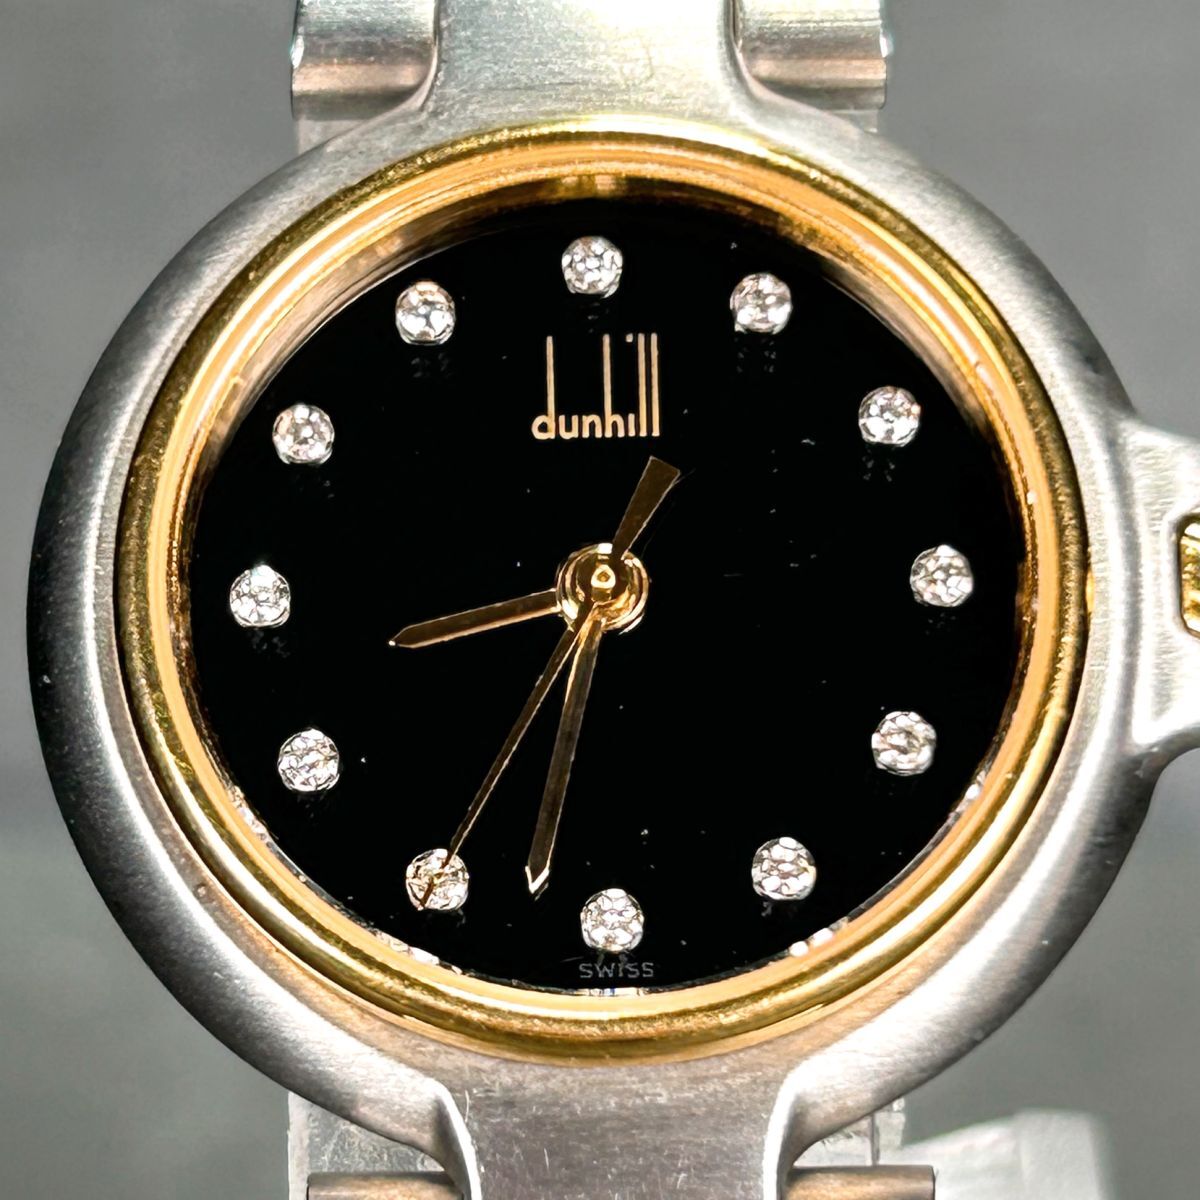  прекрасный товар dunhill Dunhill millenium 12P diamond комбинированный цвет наручные часы кварц аналог черный циферблат раунд батарейка заменена рабочее состояние подтверждено 